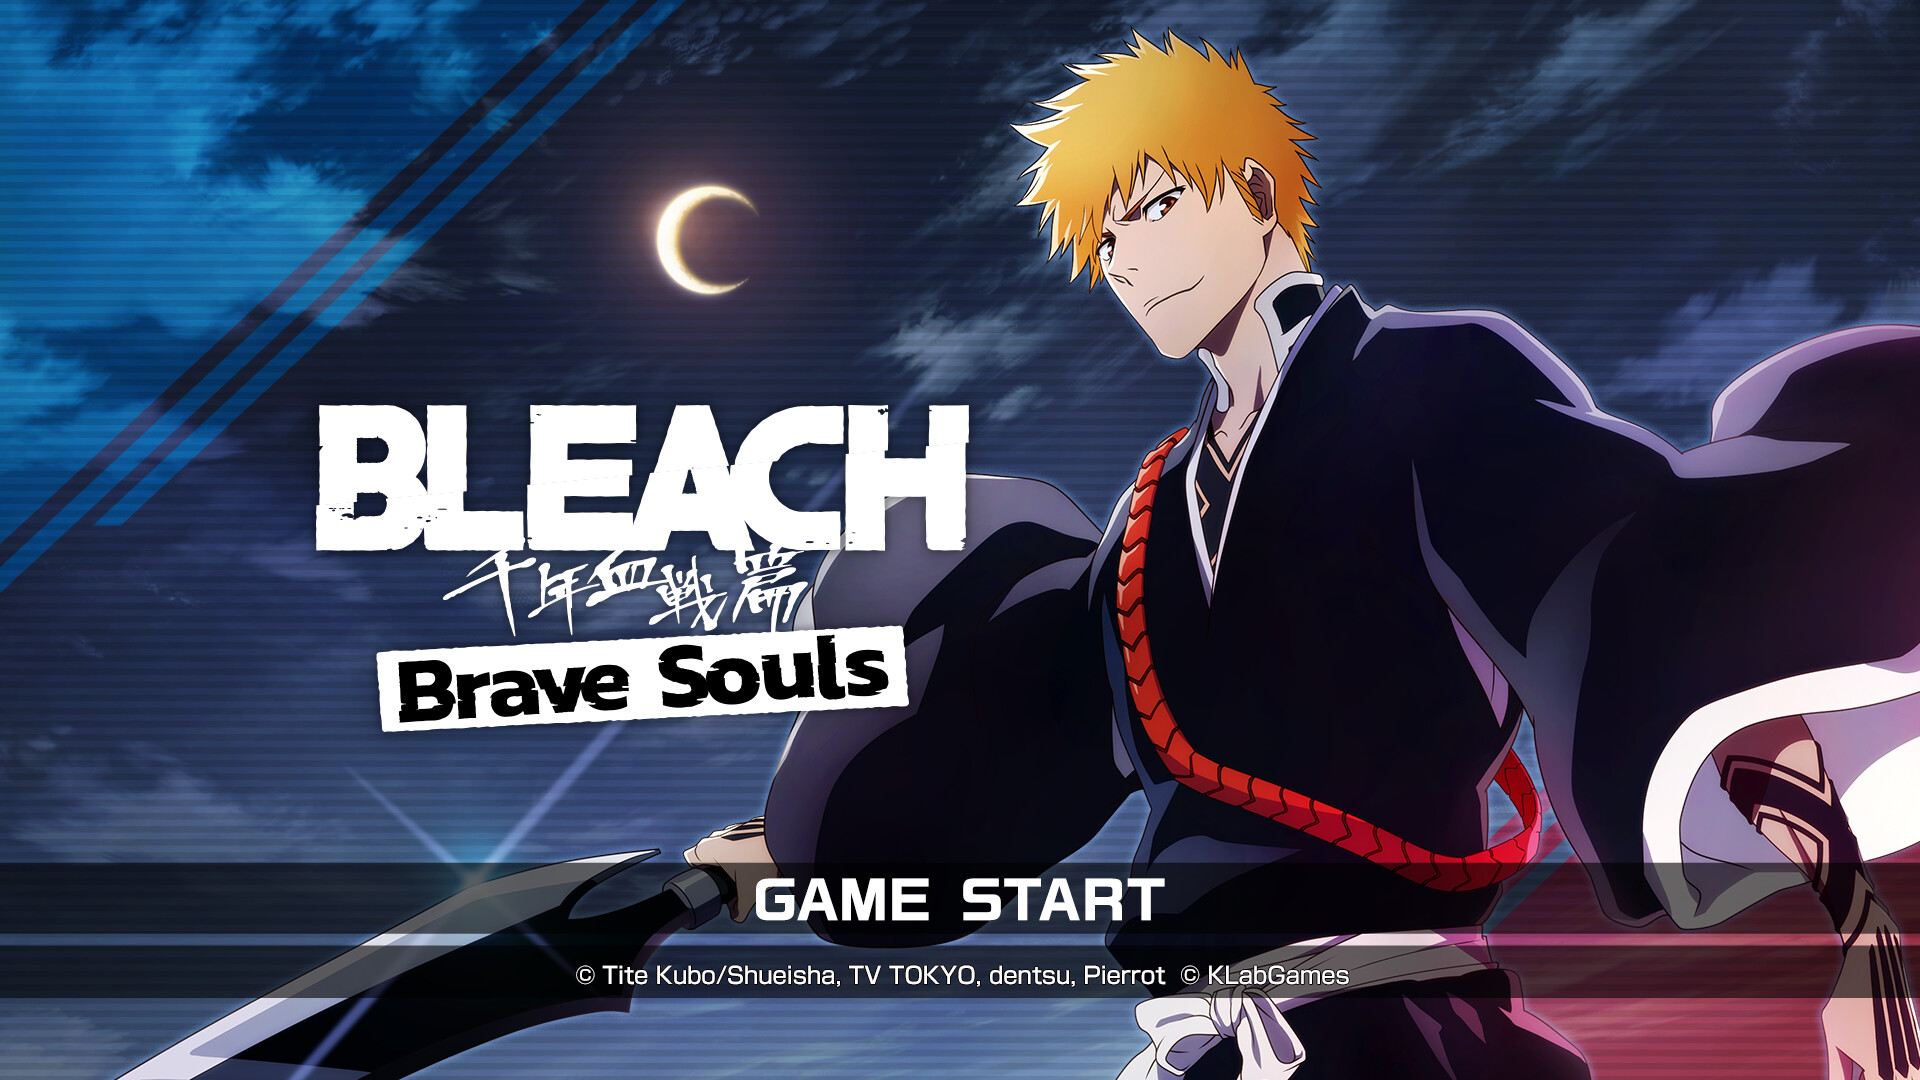 Bleach Brave Souls - Game Chuyển Thể Từ Manga Bleach Đạt Mốc 80 Triệu Lượt Tải Trên Toàn Thế Giới